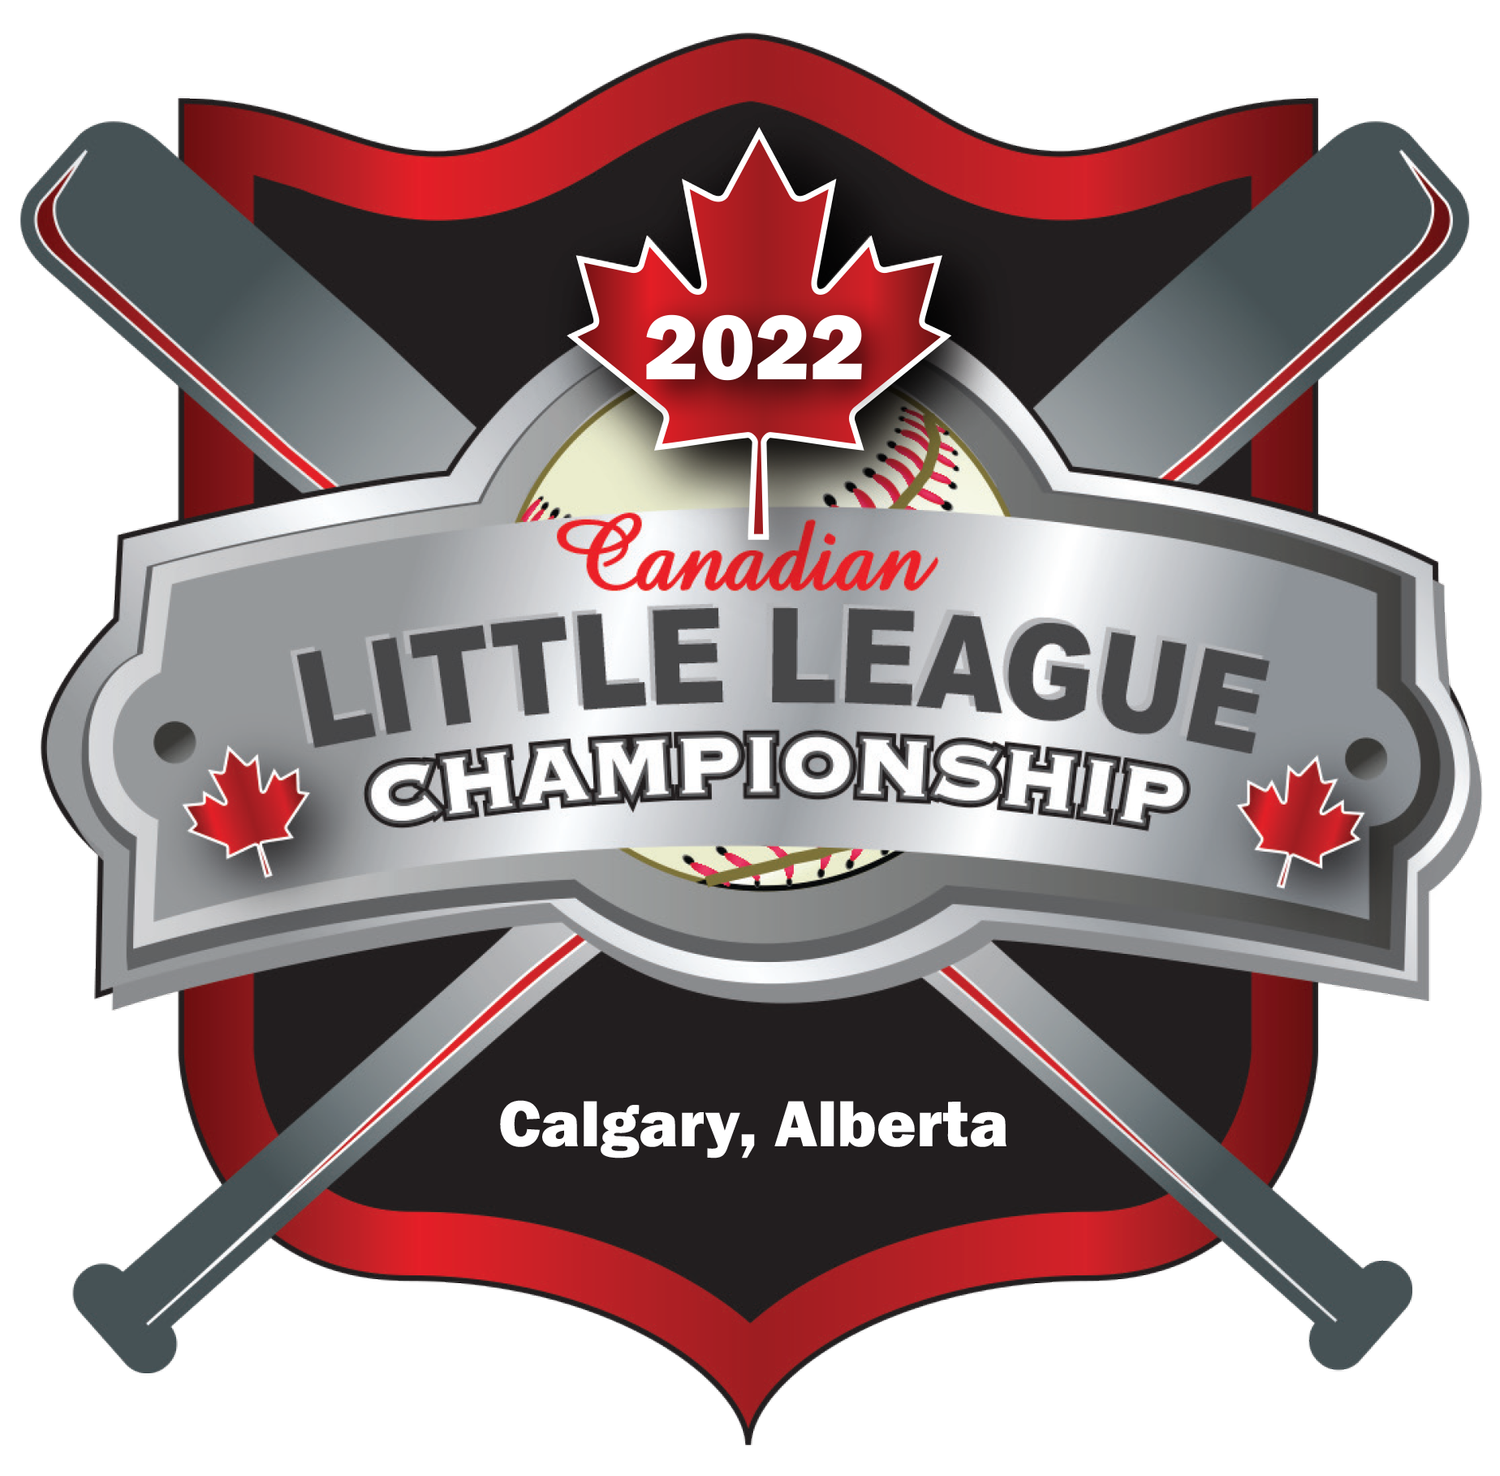 2022 Canadian Little League Championship